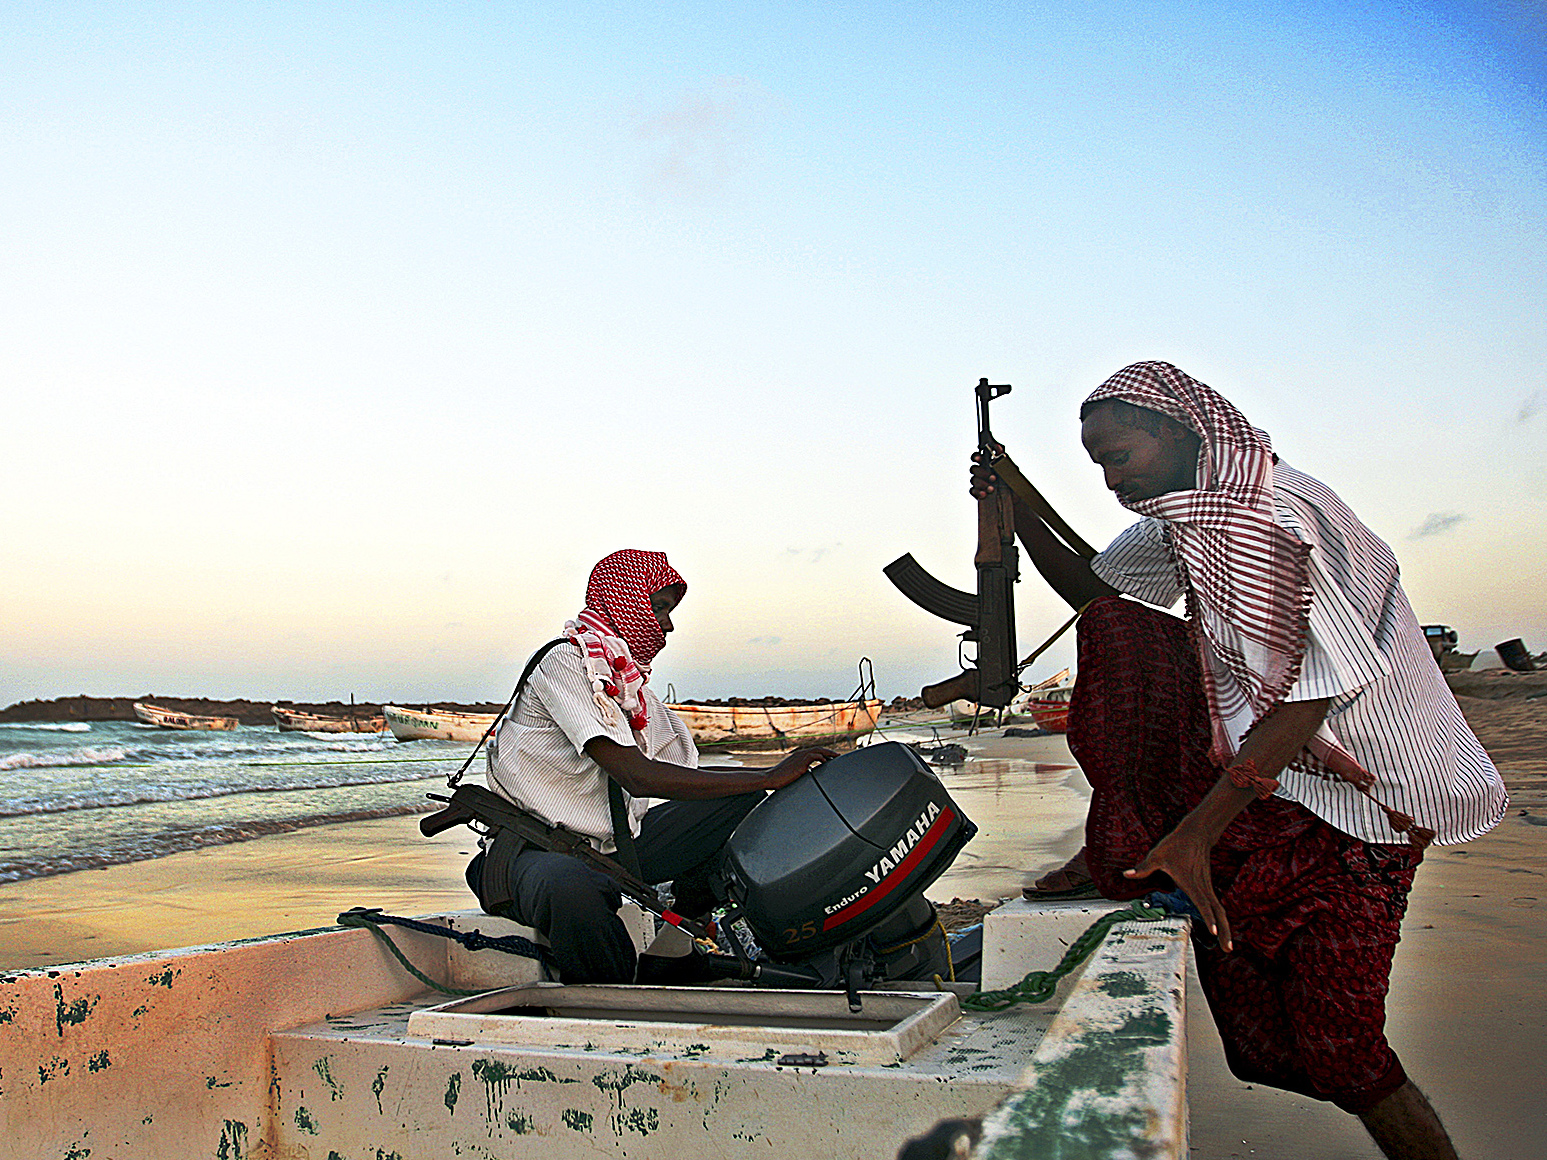 Deutschland beteiligt sich weiter an Anti-Piraten-Einsatz vor somalischer Küste